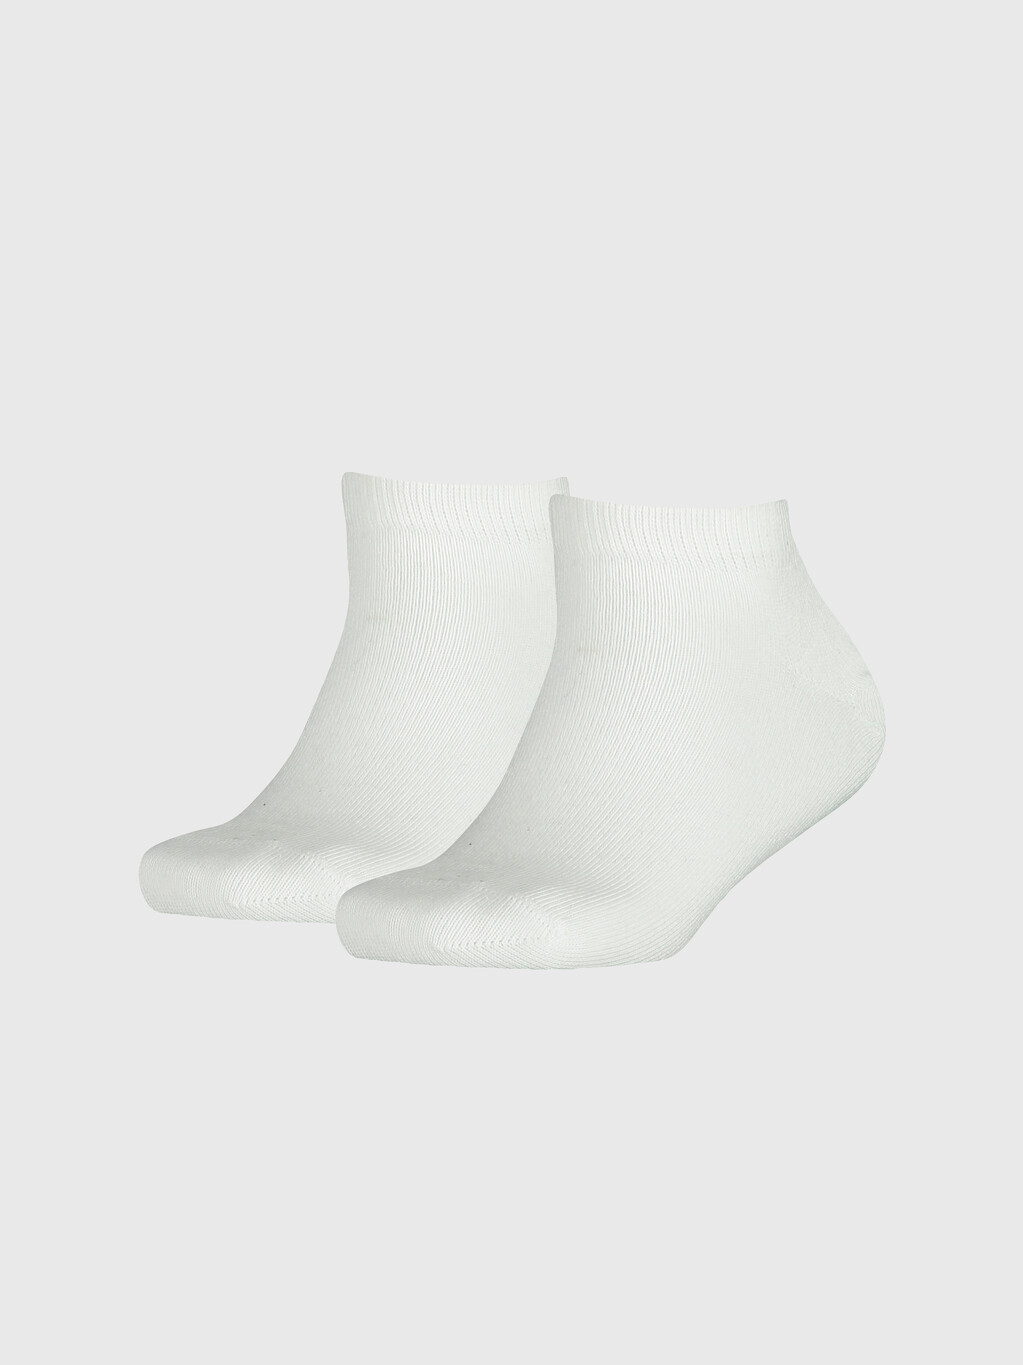 純色運動鞋型船襪, white, hi-res